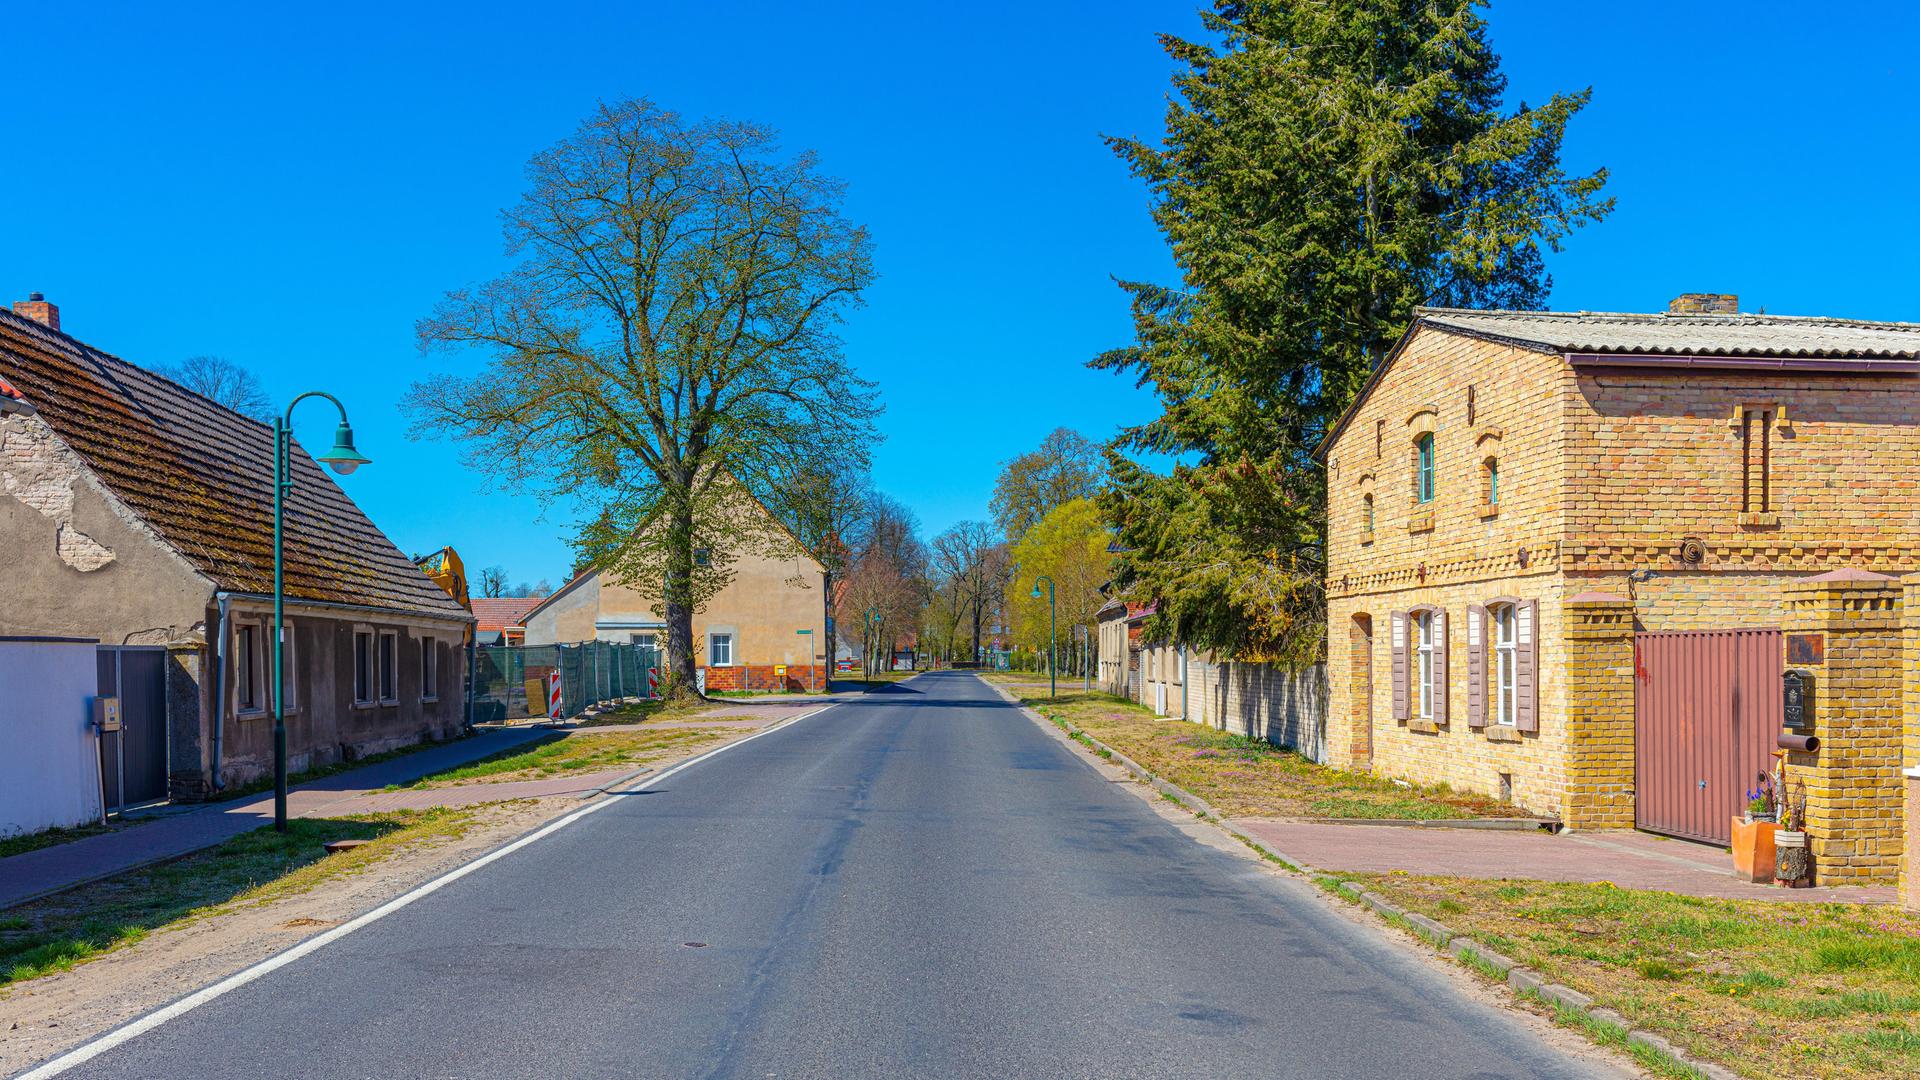 Een landweg, die een dorp doorloopt.  Rechts en links zijn sinds de oude huizen te zien - Beschouwing van historische dorpsarchitectuur met tot nadenken stemmende gevels.